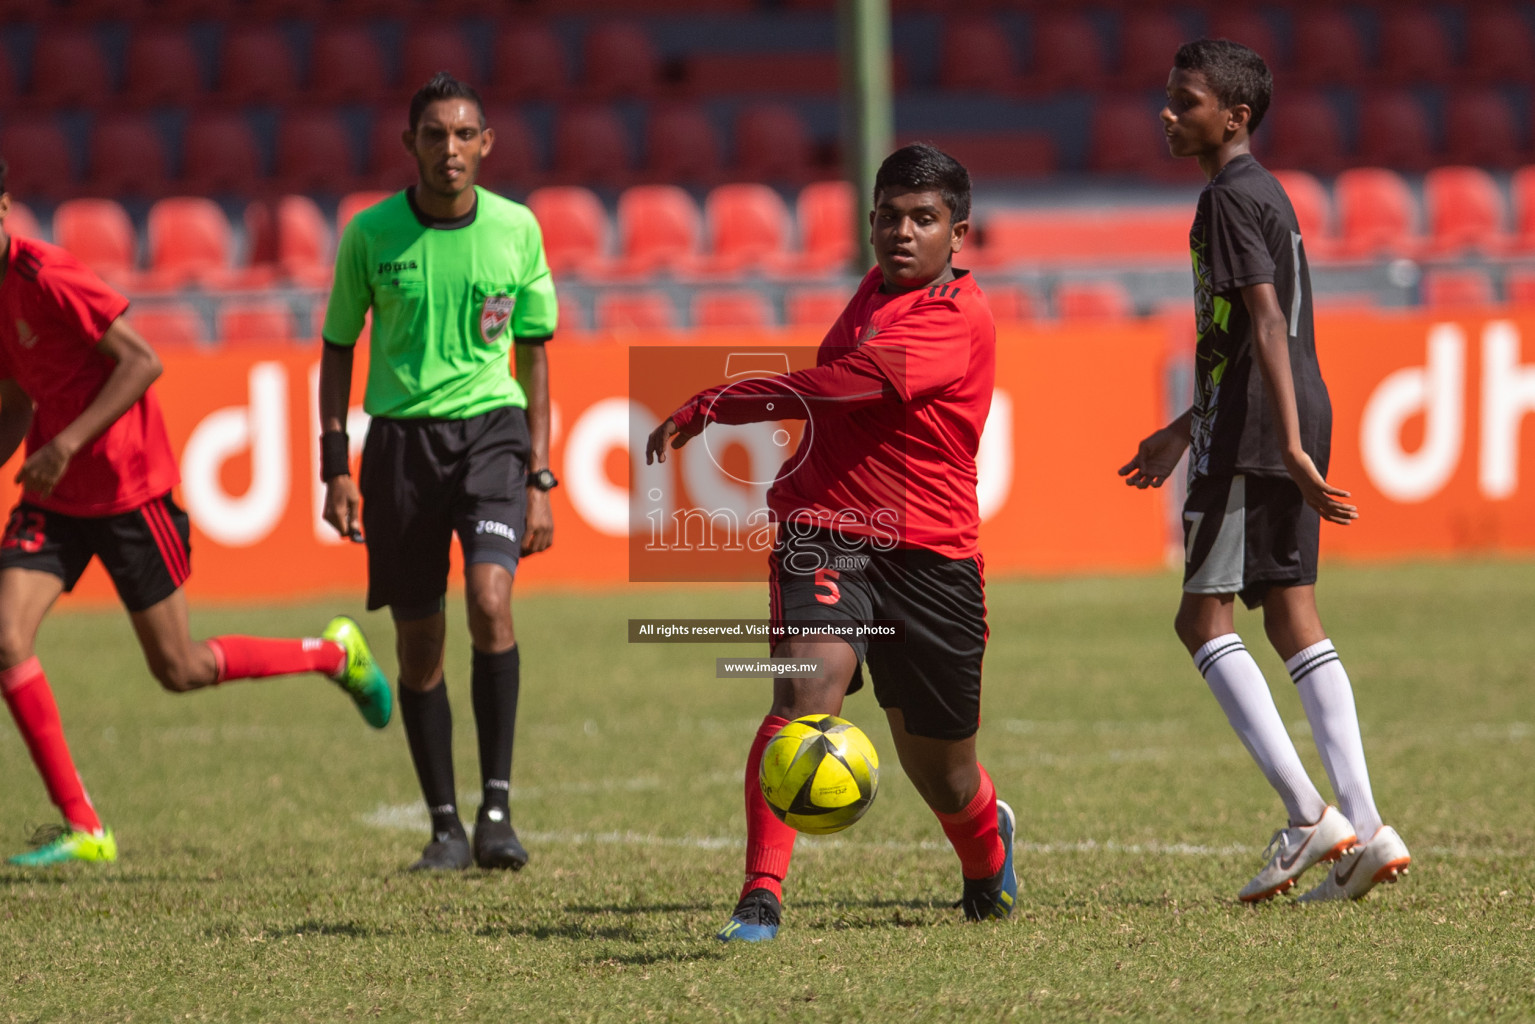 Majeedhiyya School vs Ahmadhiyya School in Mamen Inter-School Football Tournament 2019 (U15) on 9th March 2019, in Male' Maldives (Images.mv Photo: Suadh Abdul Sattar)